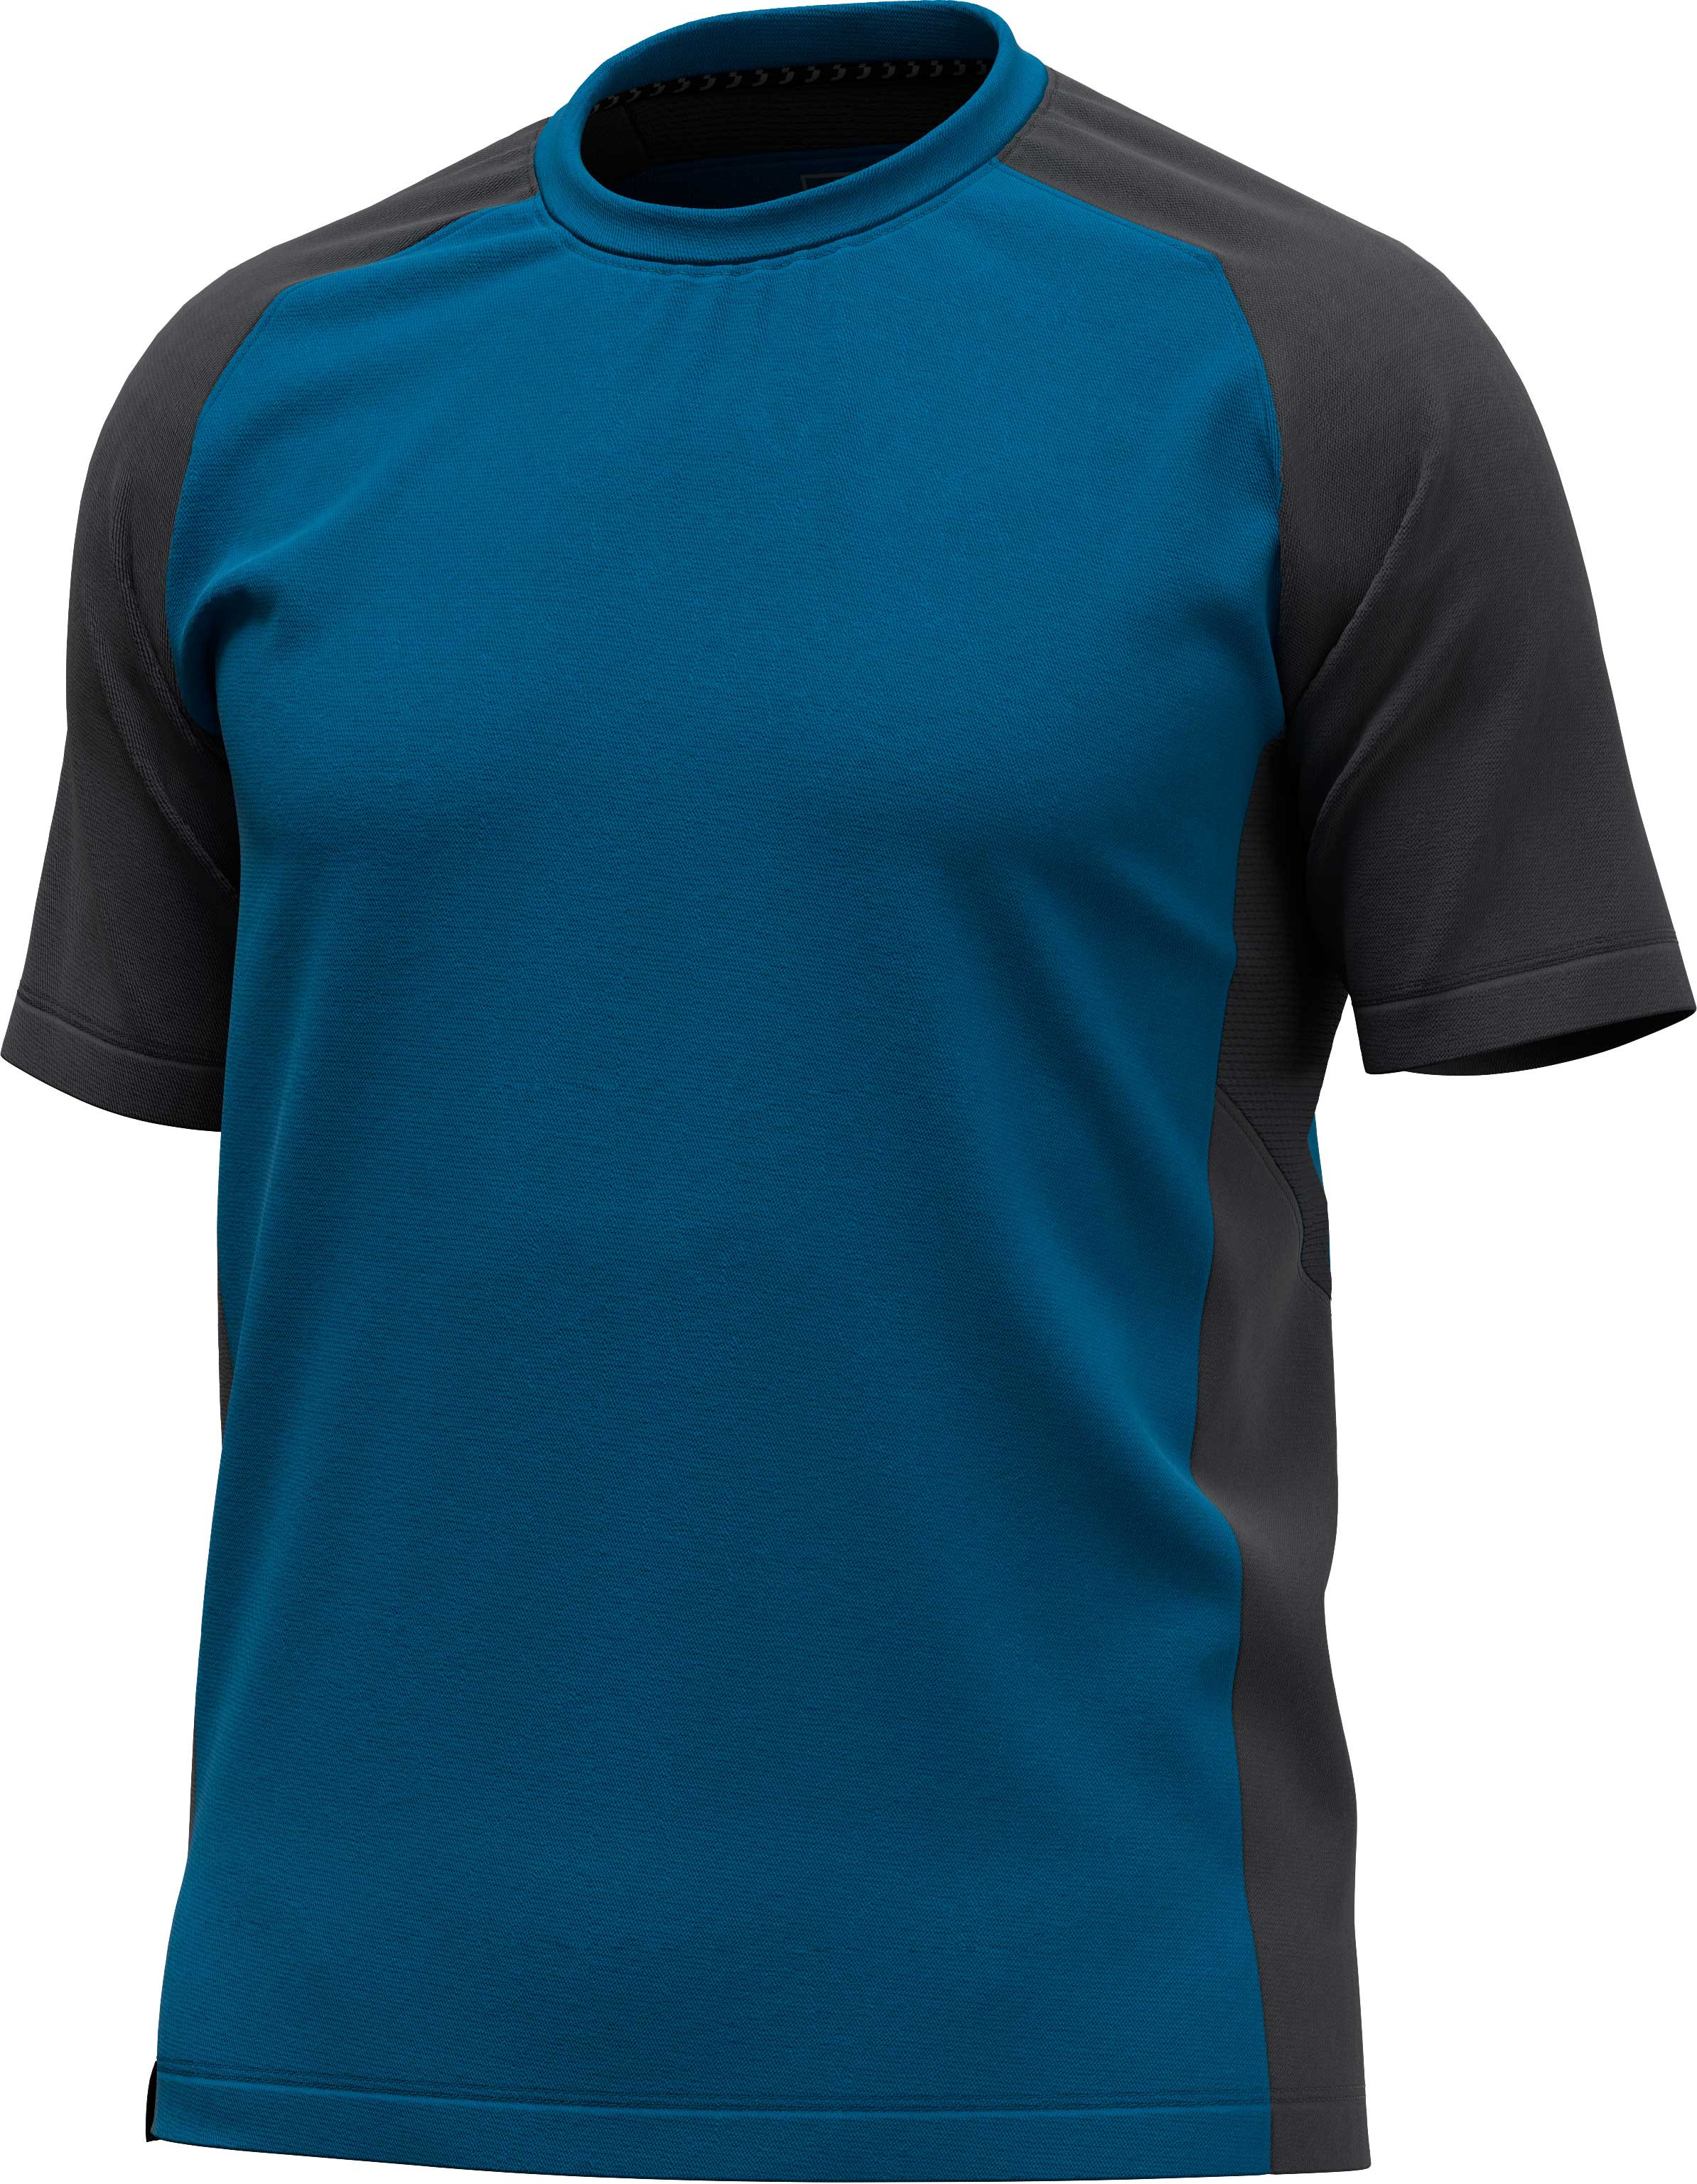 Camiseta bicolor de manga corta para equipación de fútbol para niños